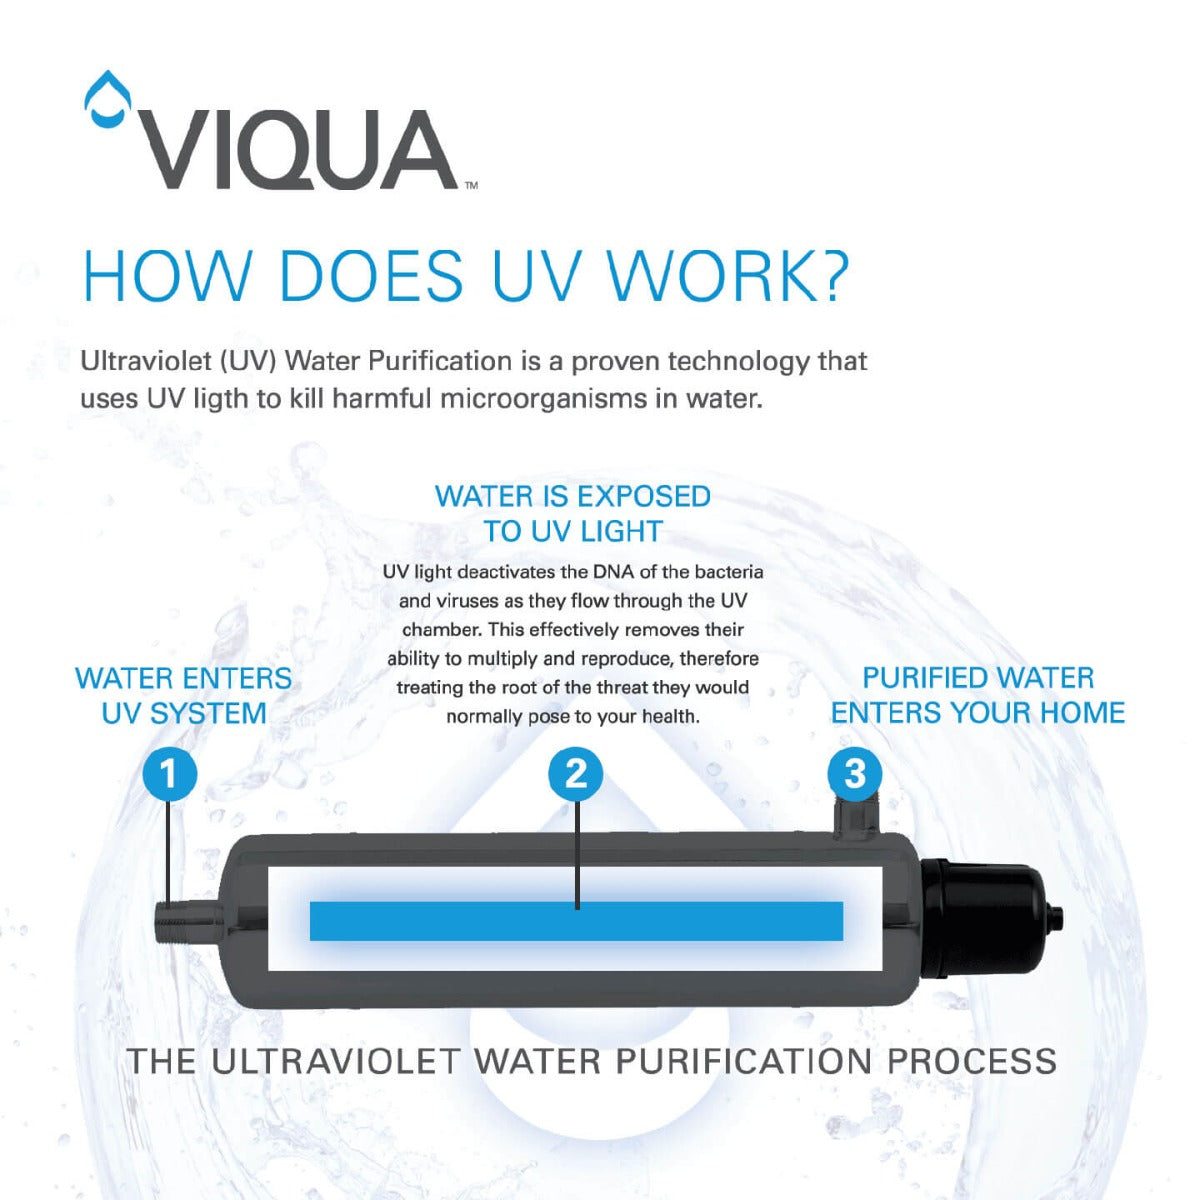 Viqua QSO-410 Replacement Quartz Sleeve for VH410